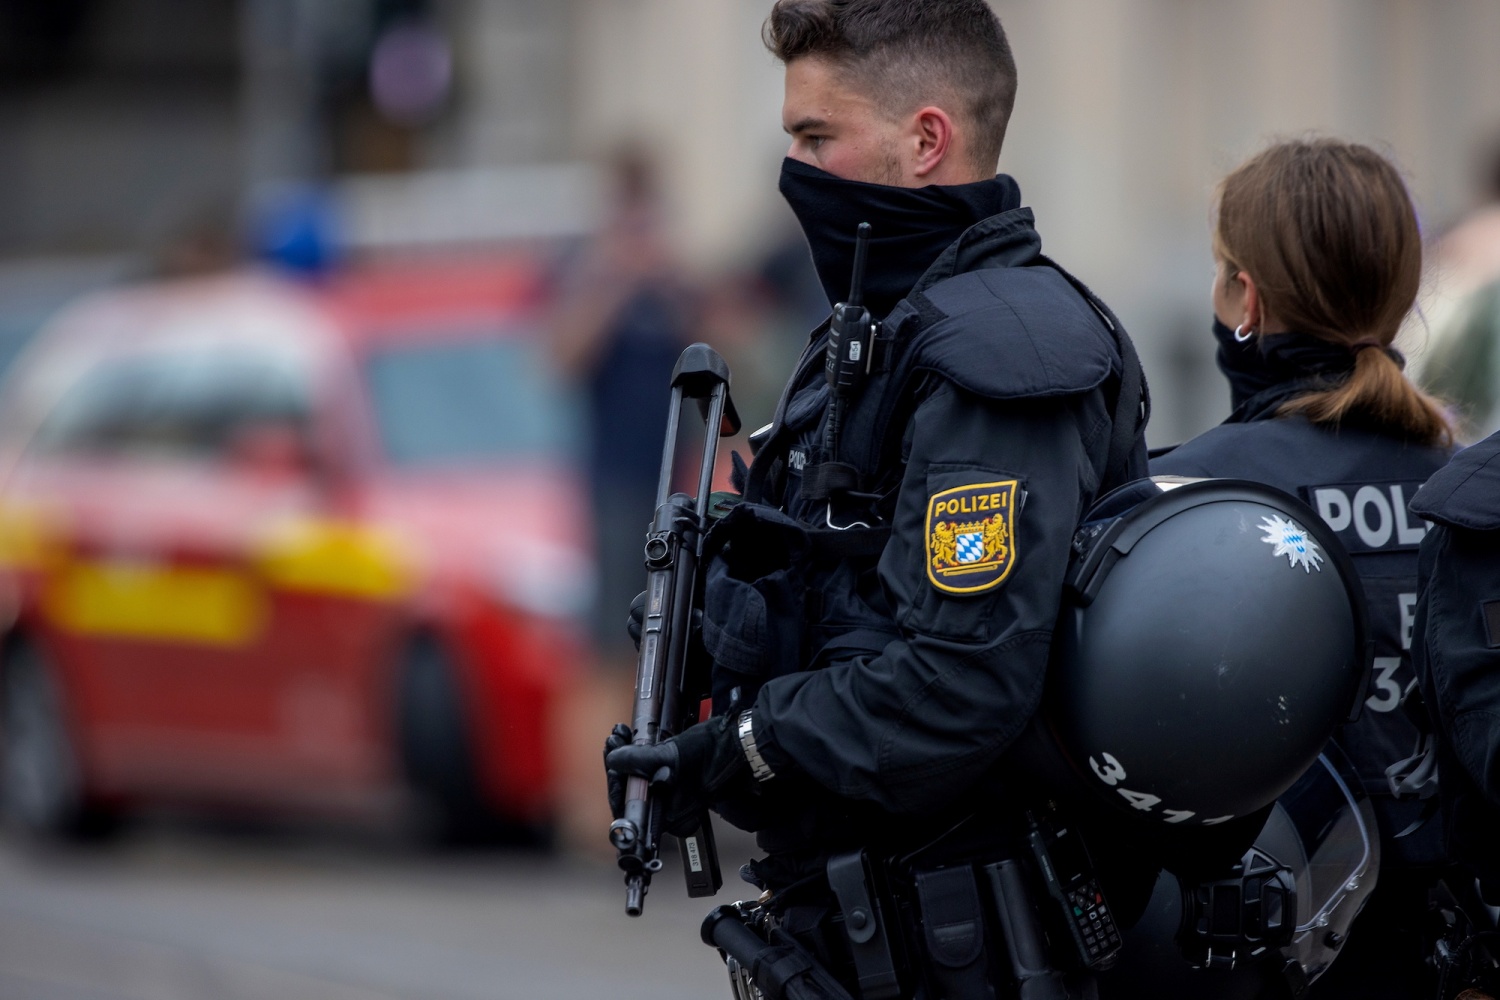 مكافحة الإرهاب في ألمانيا ـ "داعش" مصدر إلهام لهجمات إرهابية